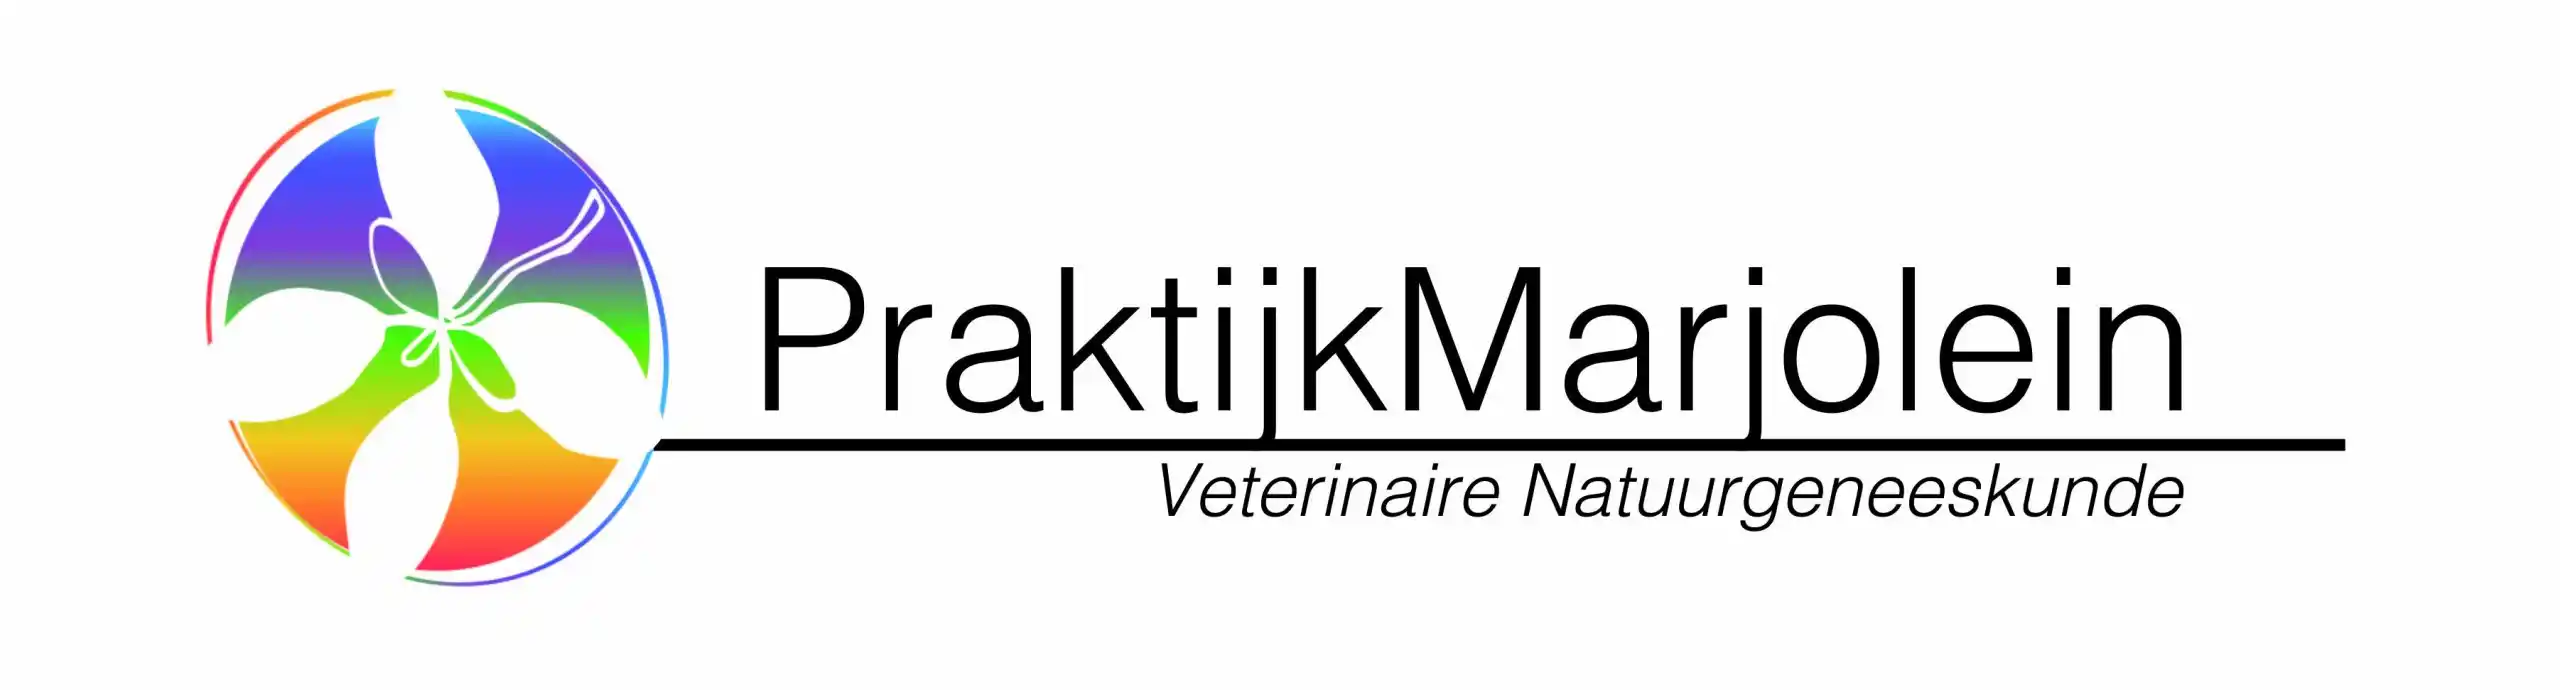 Het logo van praktijk marjolein, veterinaire natuurgeneeskunde